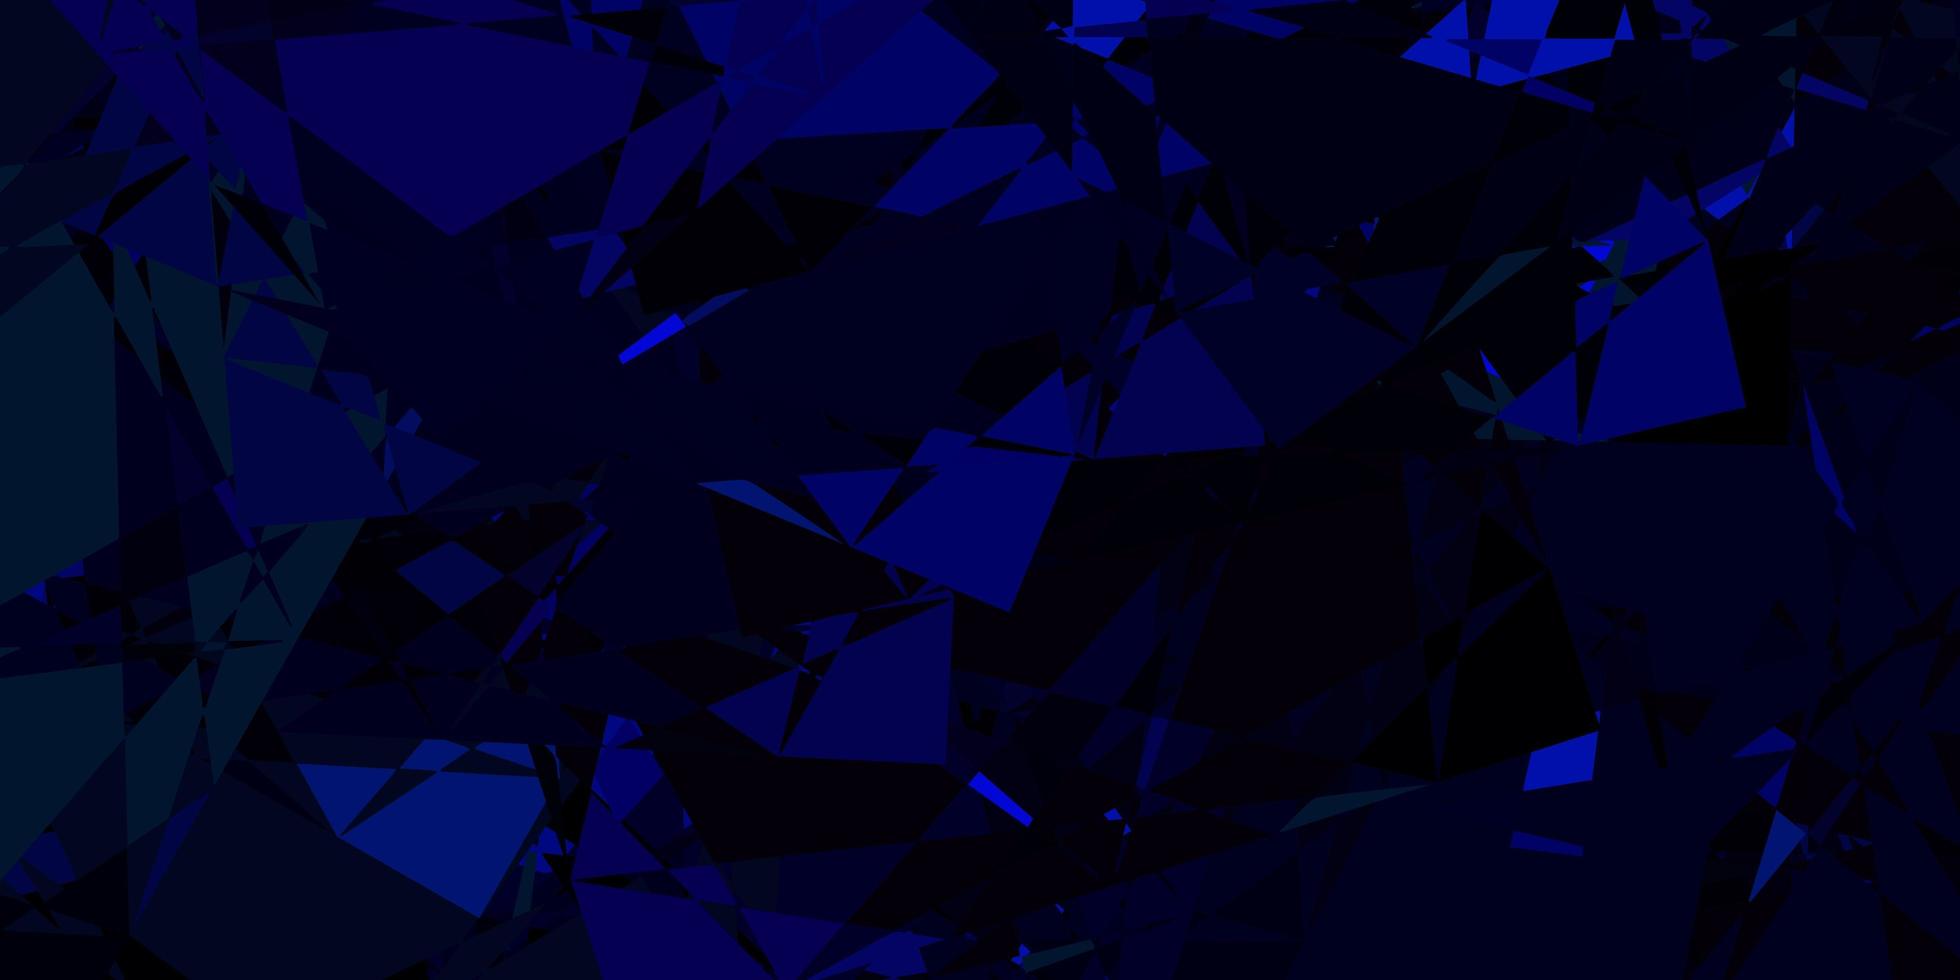 layout de vetor azul escuro e verde com formas triangulares.